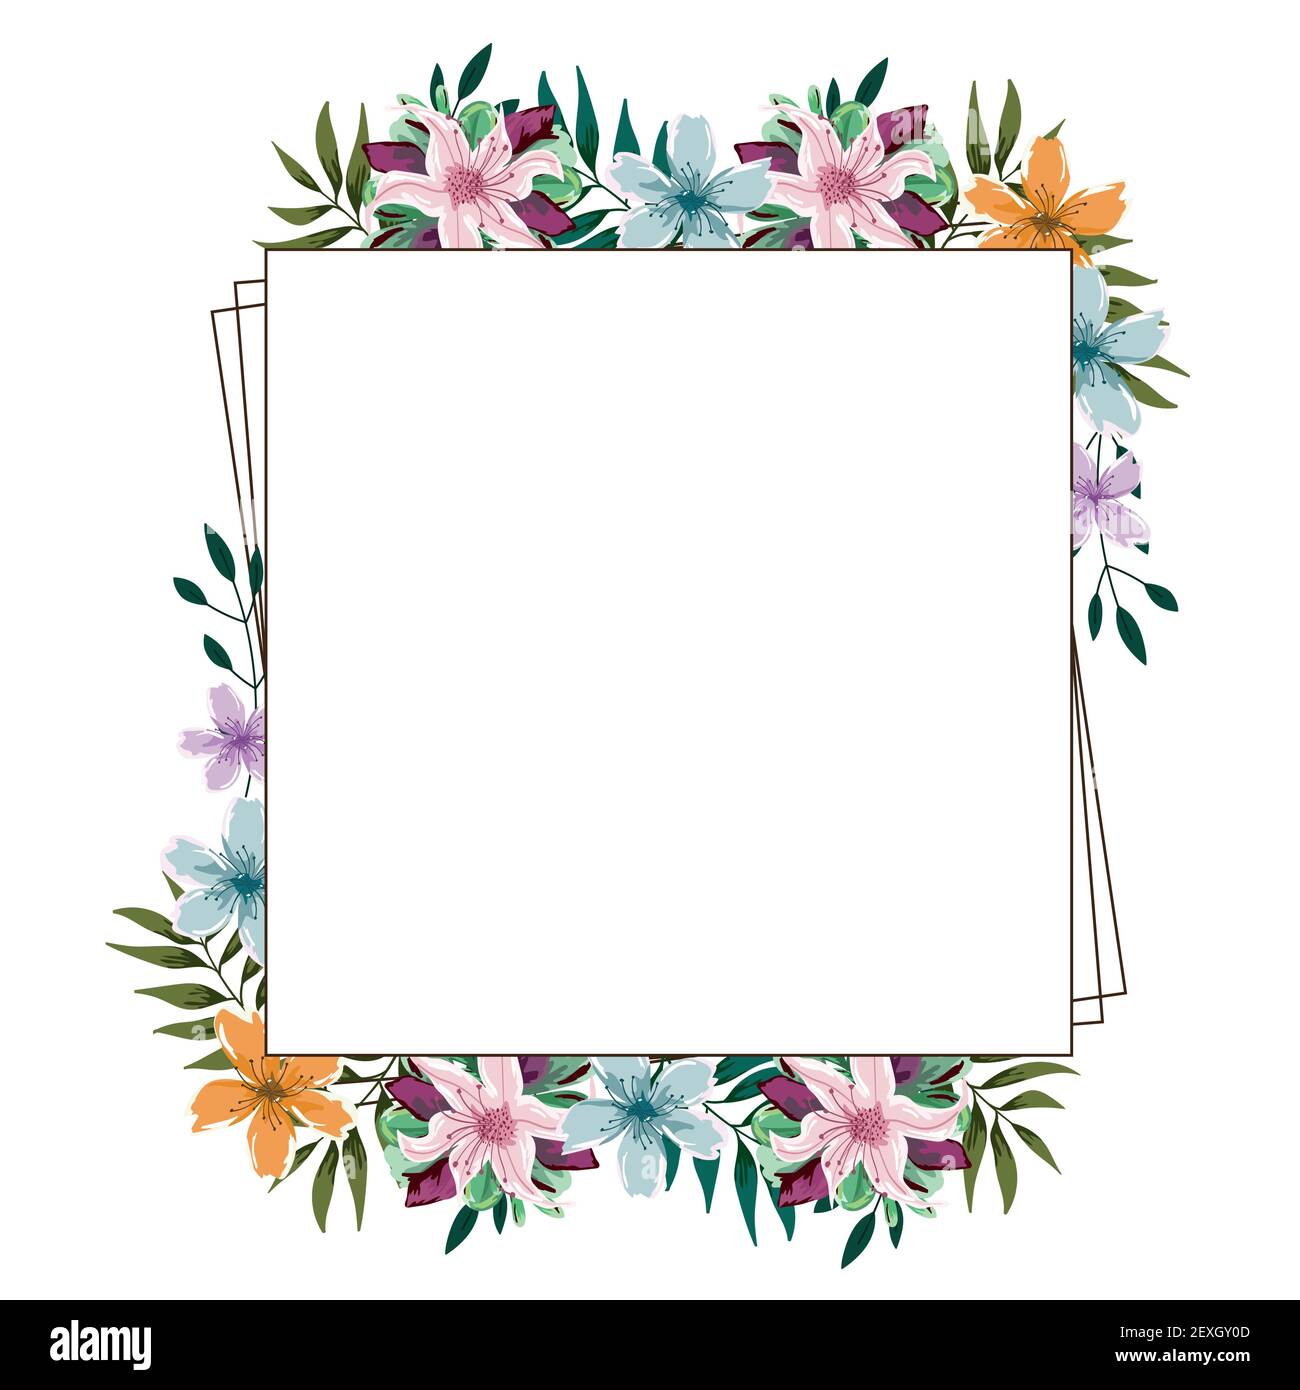 aquarelle florale cadre fleurs feuillage Image Vectorielle Stock - Alamy